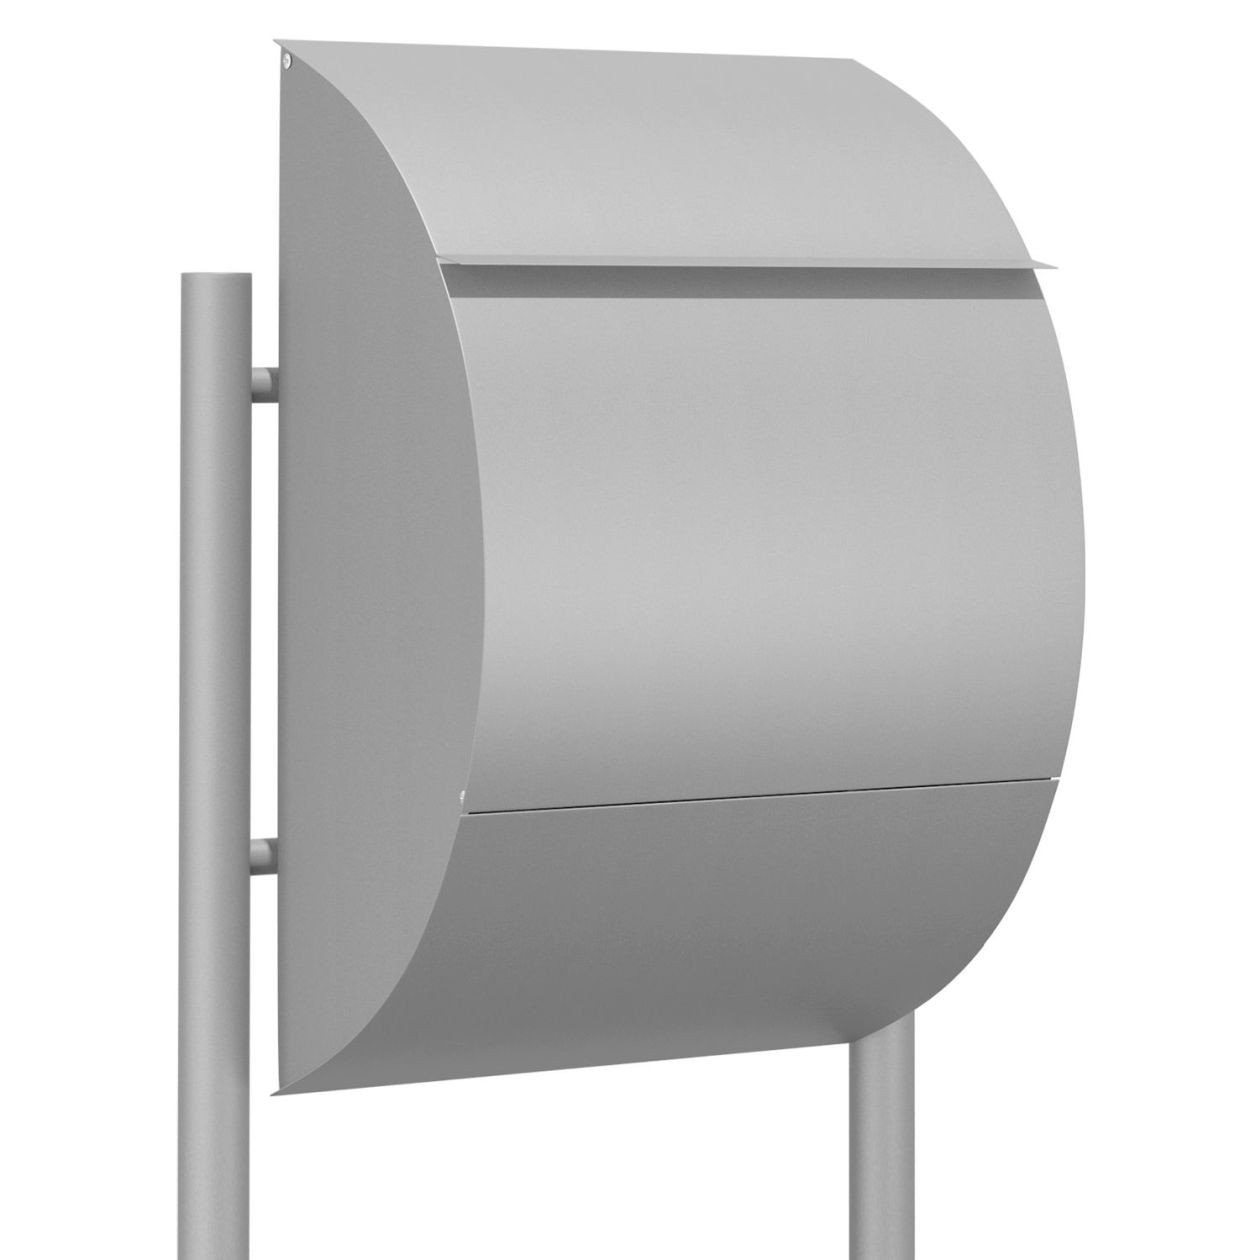 Bravios Briefkasten Standbriefkasten Jumbo Metallic Grau